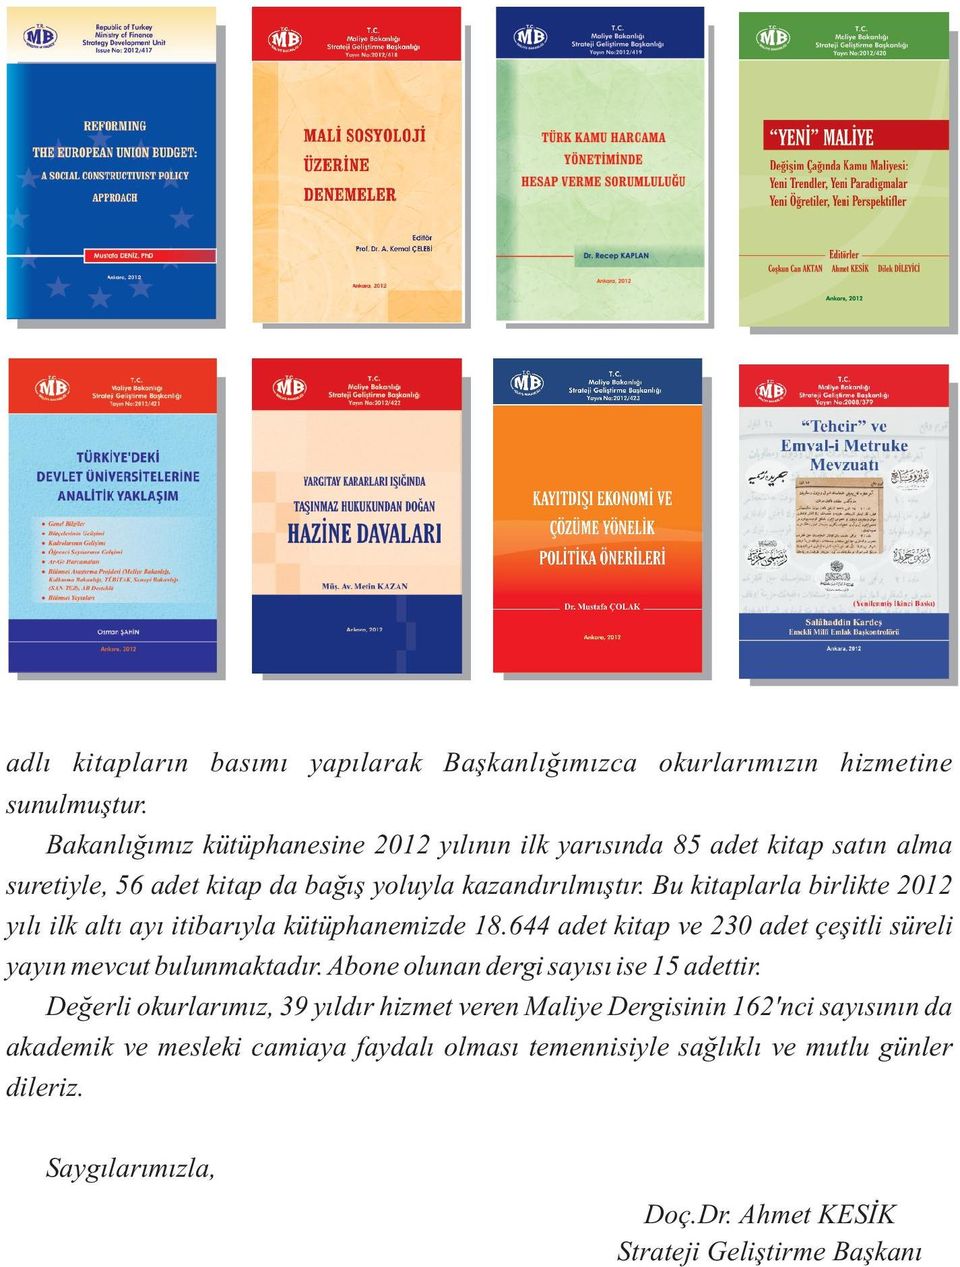 Bu kitaplarla birlikte 2012 yýlý ilk altý ayý itibarýyla kütüphanemizde 18.644 adet kitap ve 230 adet çeþitli süreli yayýn mevcut bulunmaktadýr.